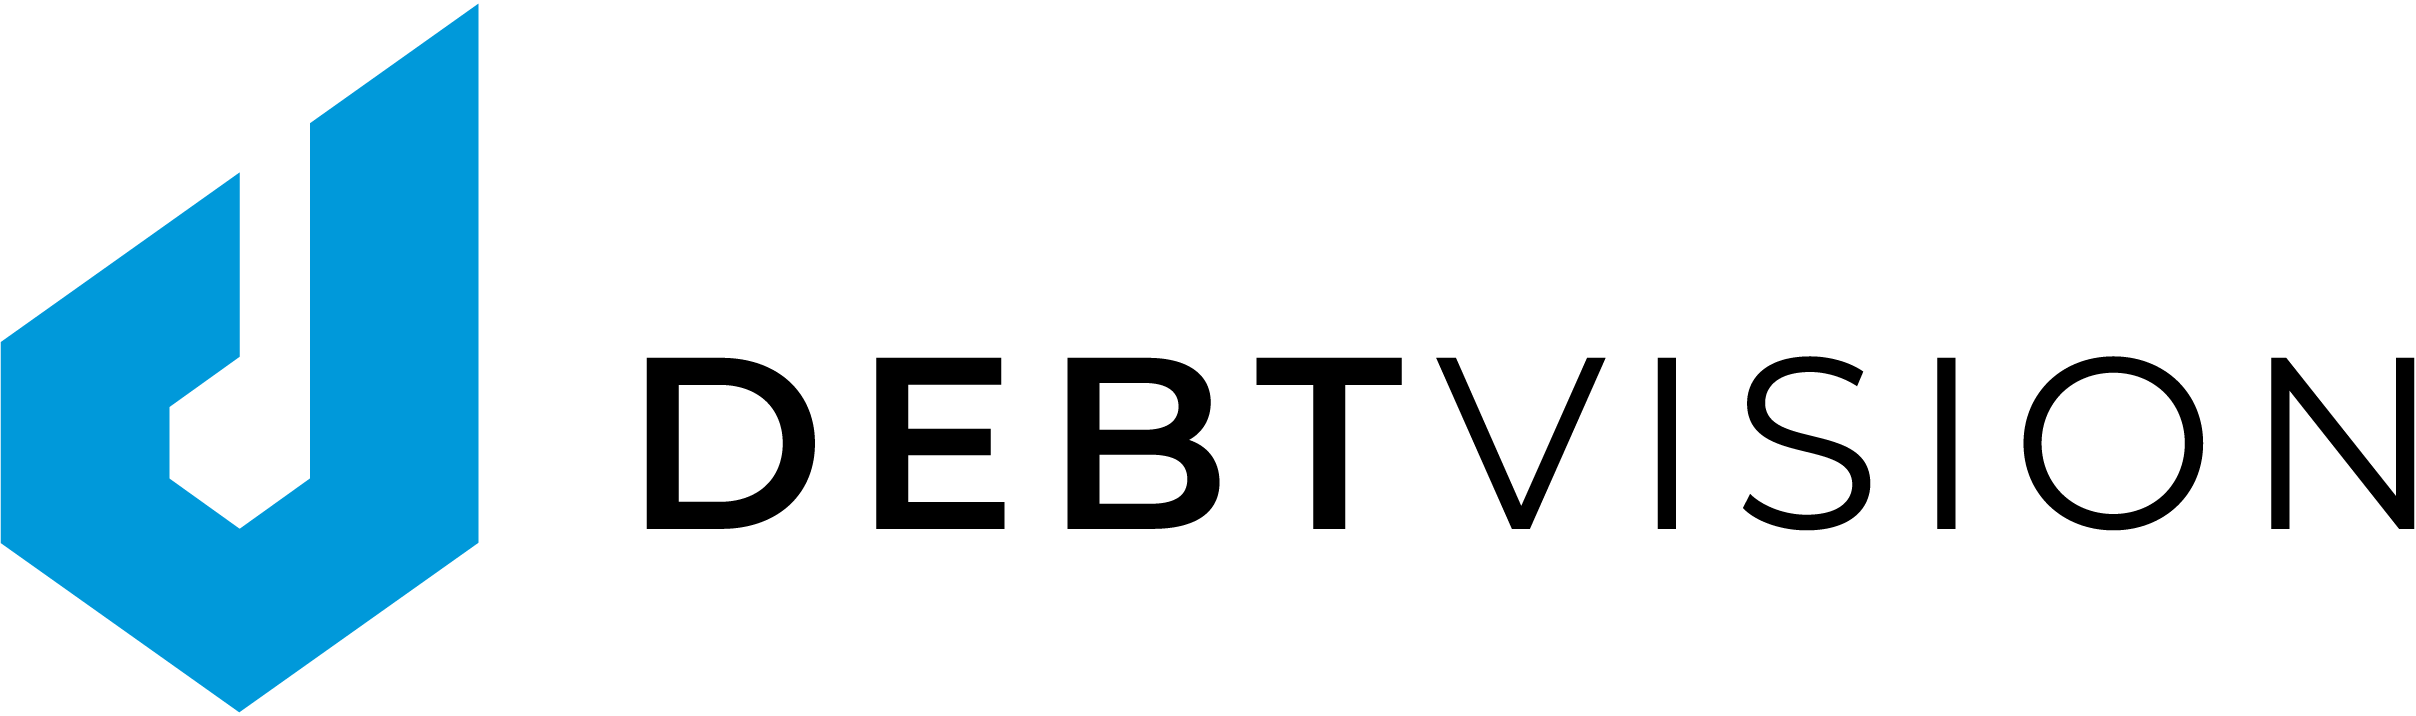 Logo Publsiher LBBW erwirbt Anteil der Börse Stuttgart an der DEBTVISION GmbH